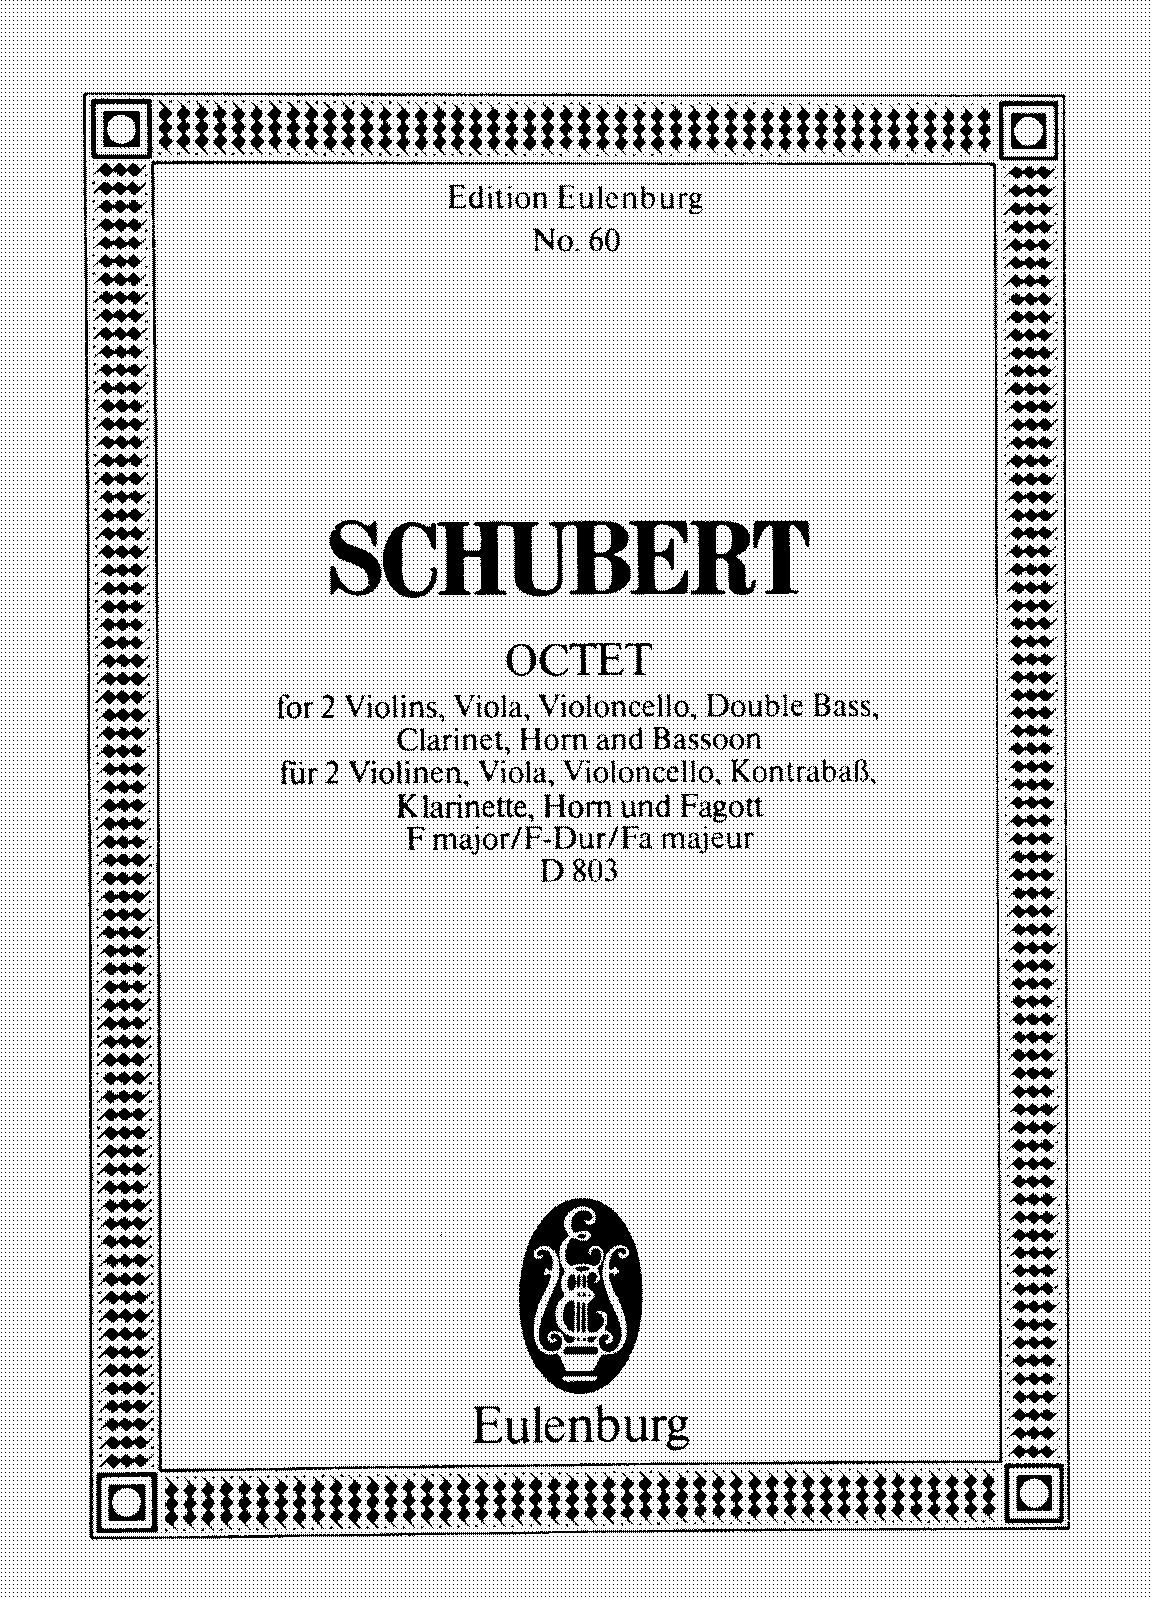 Octet in F major, D.803 (Schubert, Franz) - IMSLP: Free Sheet Music PDF Download